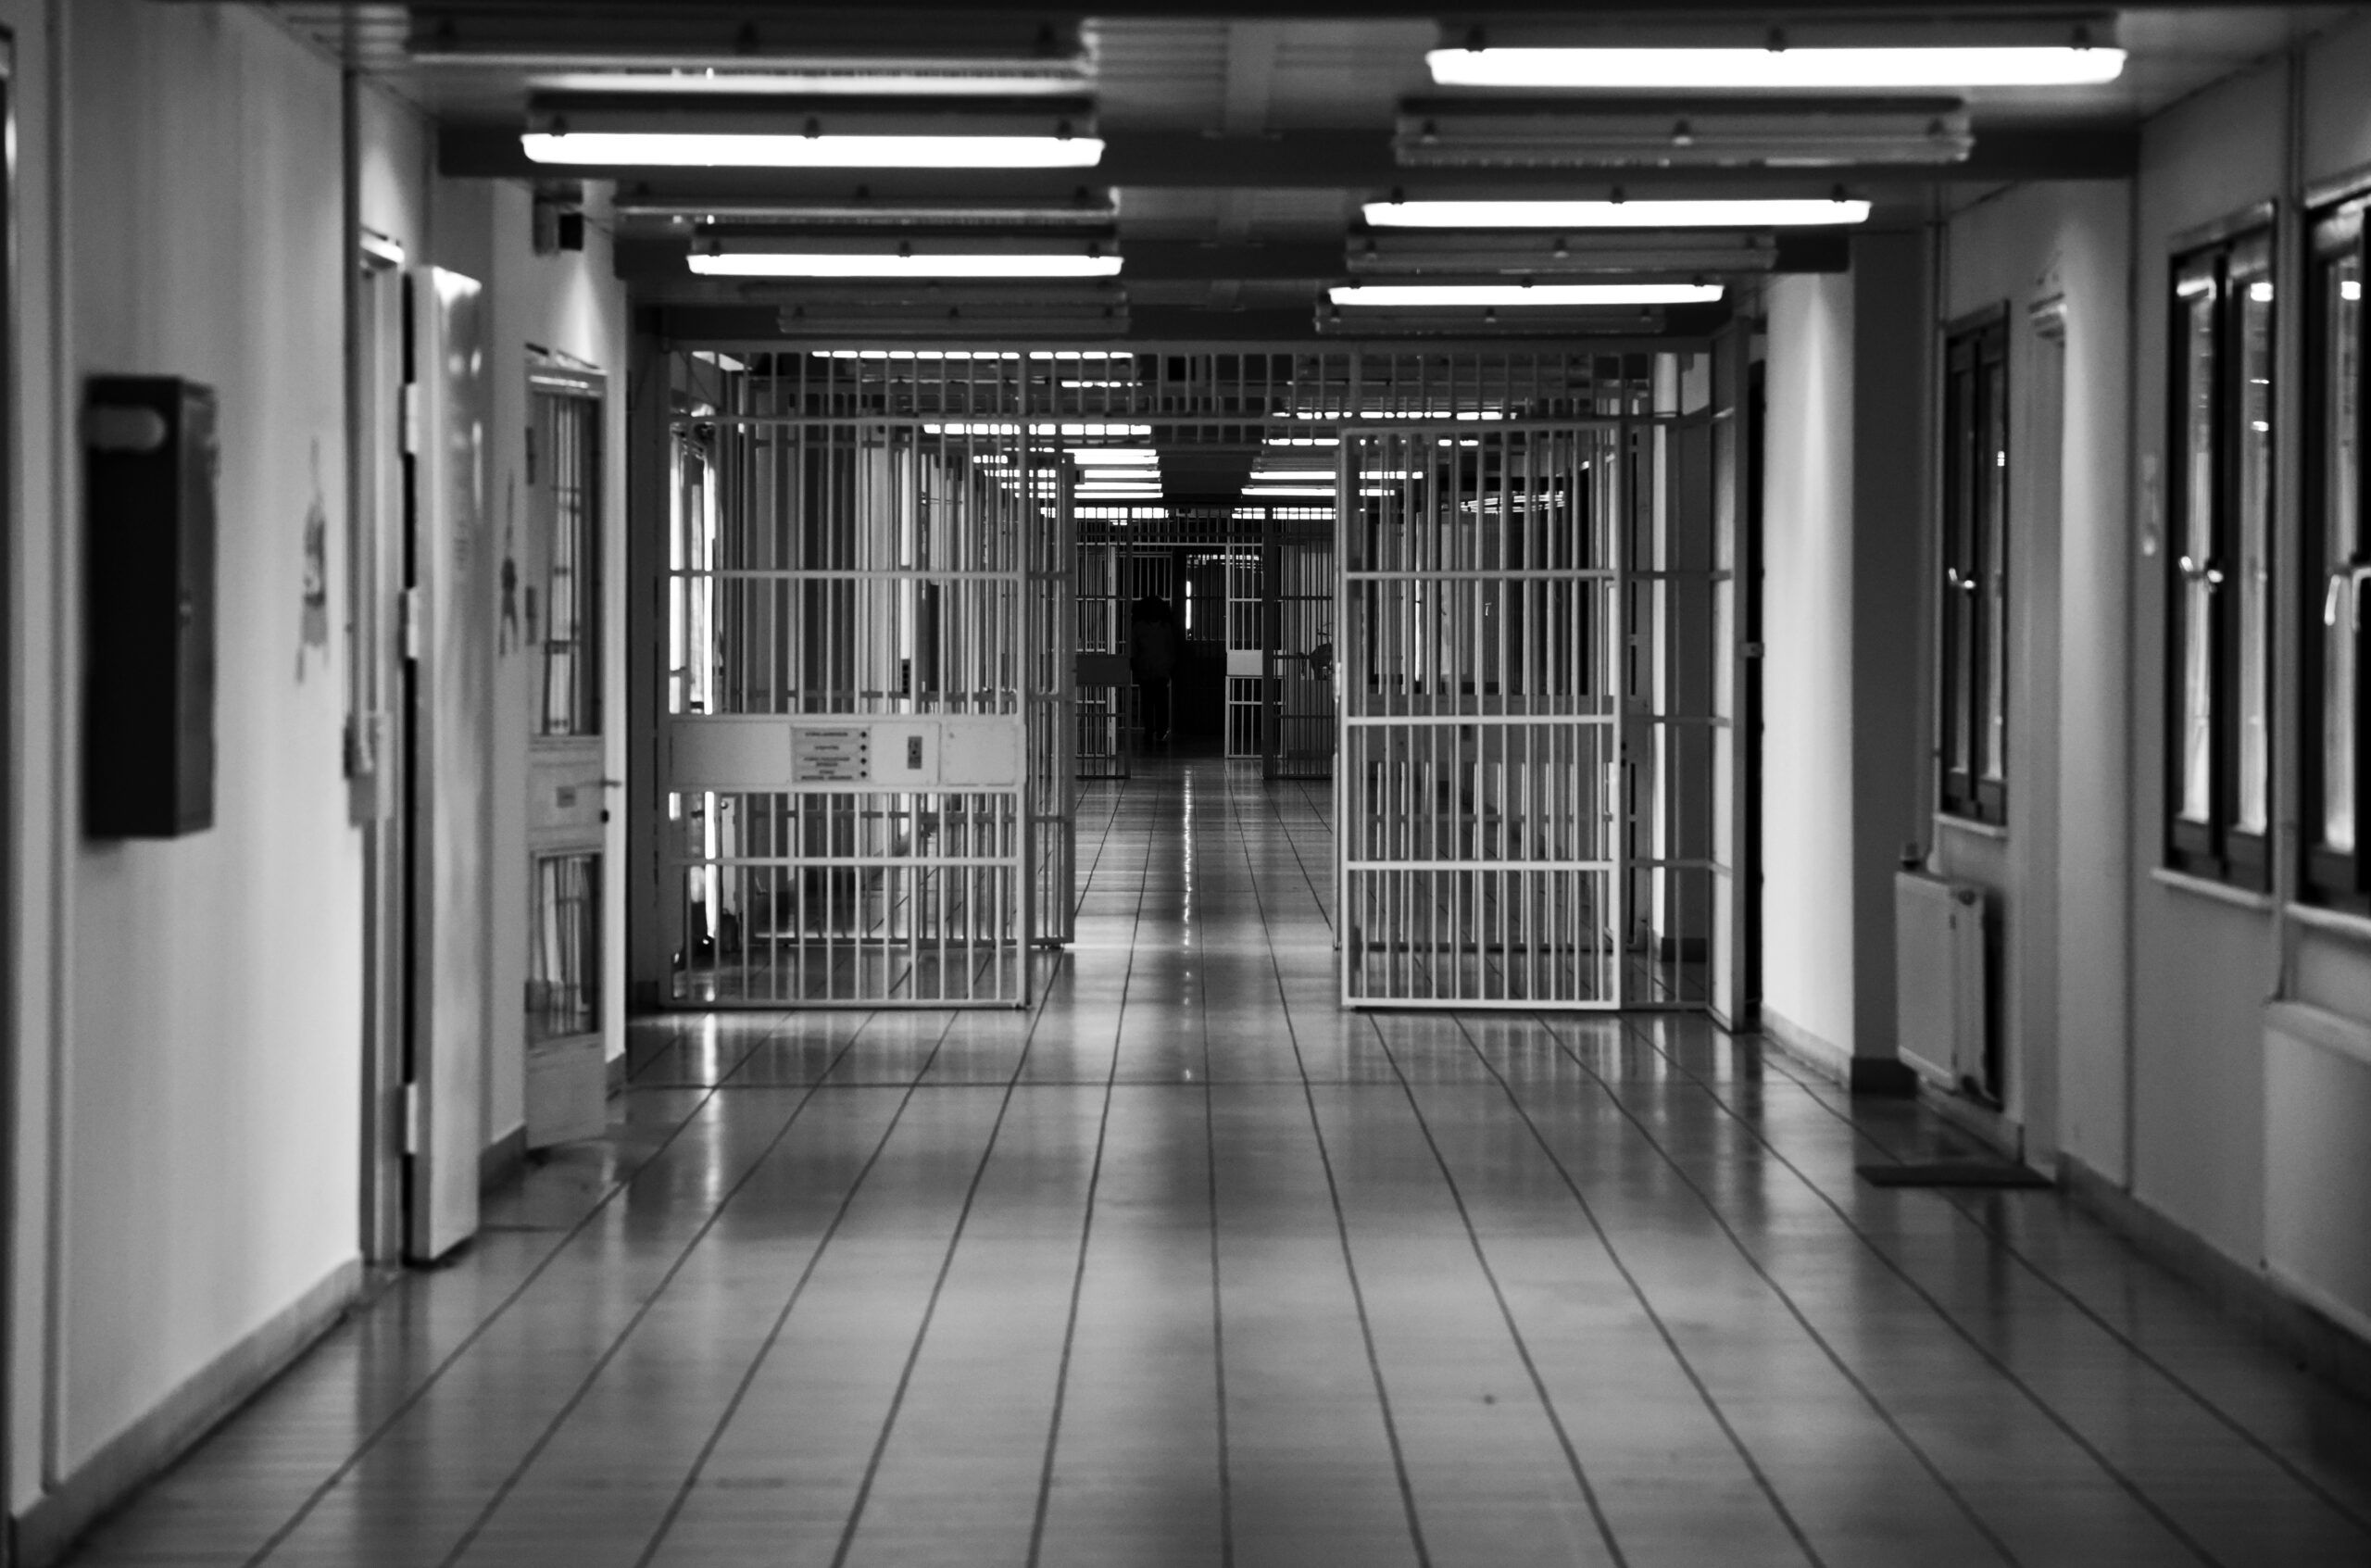 Θεσσαλονίκη: Στη φυλακή δύο σωφρονιστικοί υπάλληλοι – Καταδικάστηκαν σε ποινές κάθειρξης για εισαγωγή κινητών τηλεφώνων στο κατάστημα κράτησης της Νιγρίτας